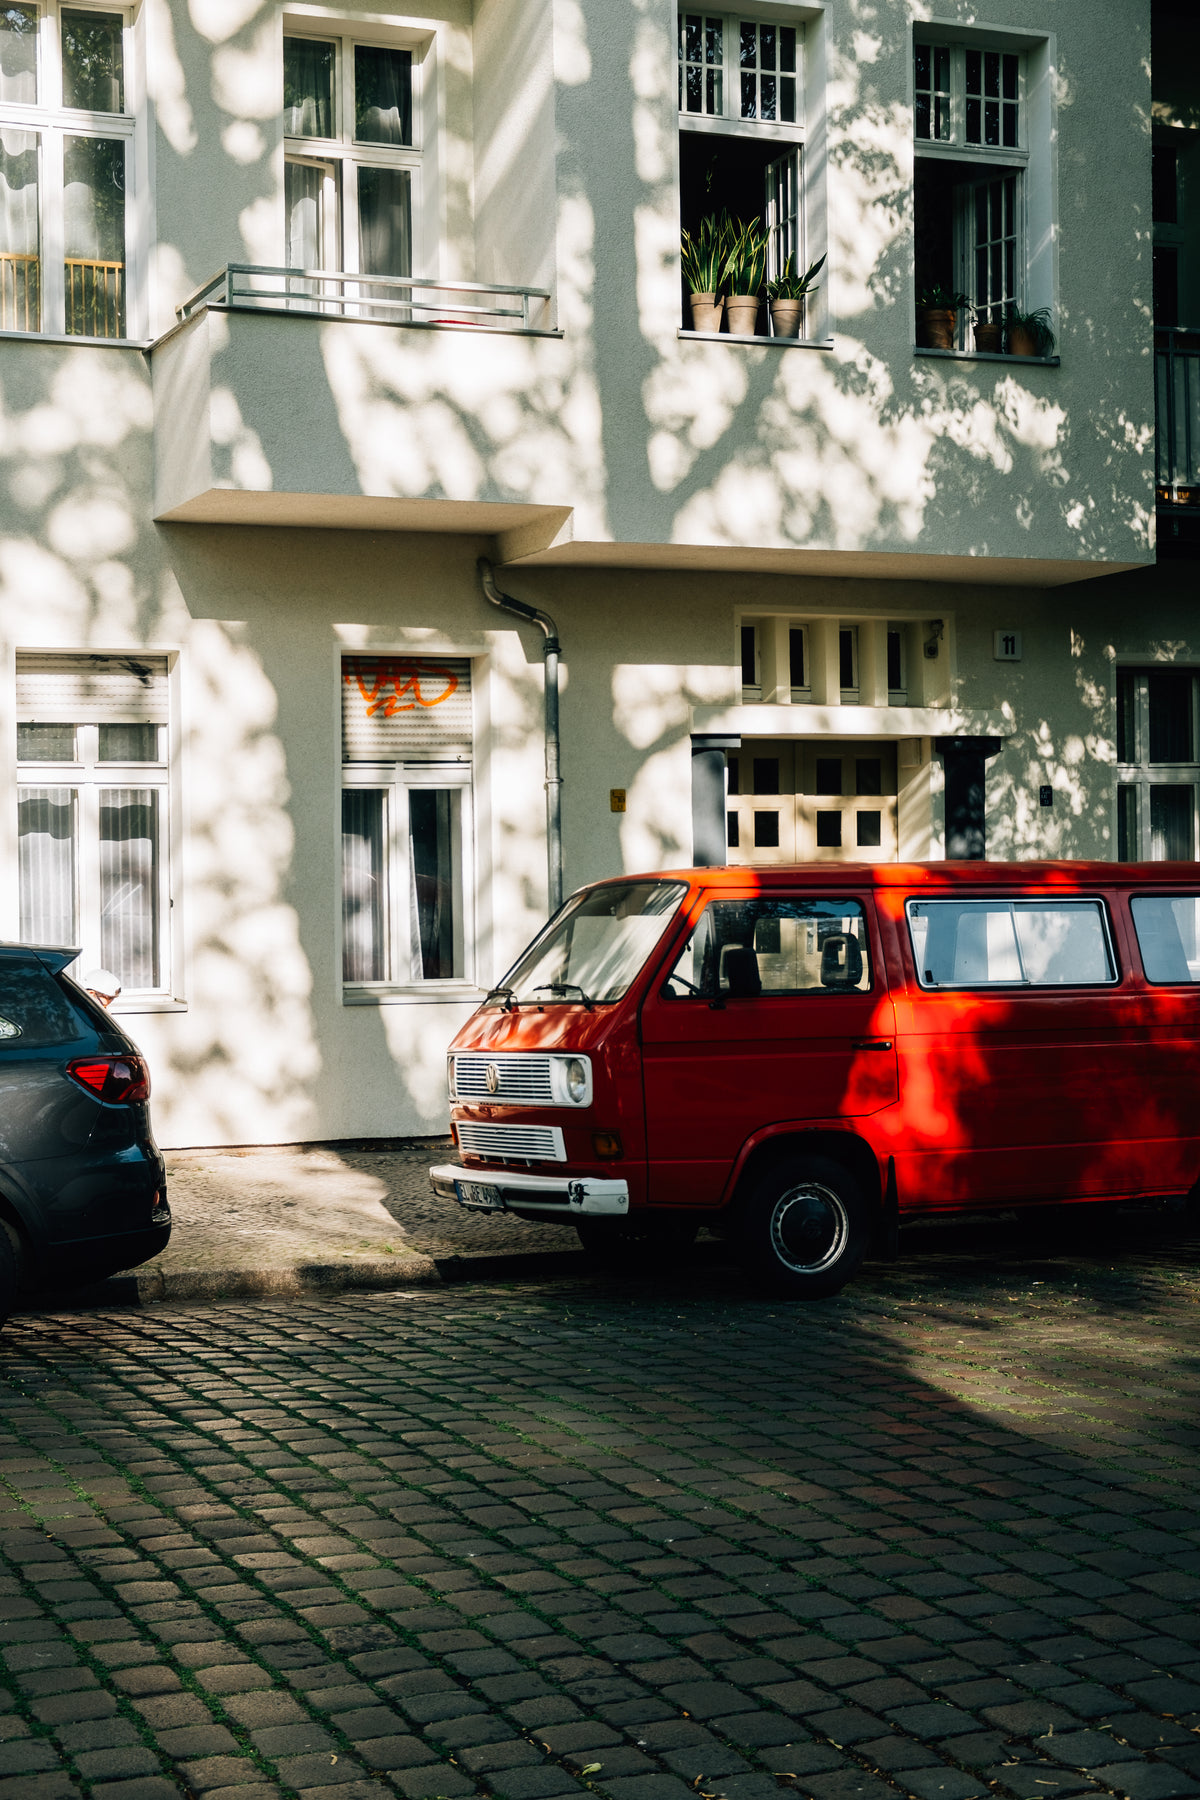 老式红色面包车停在一栋白色建筑旁